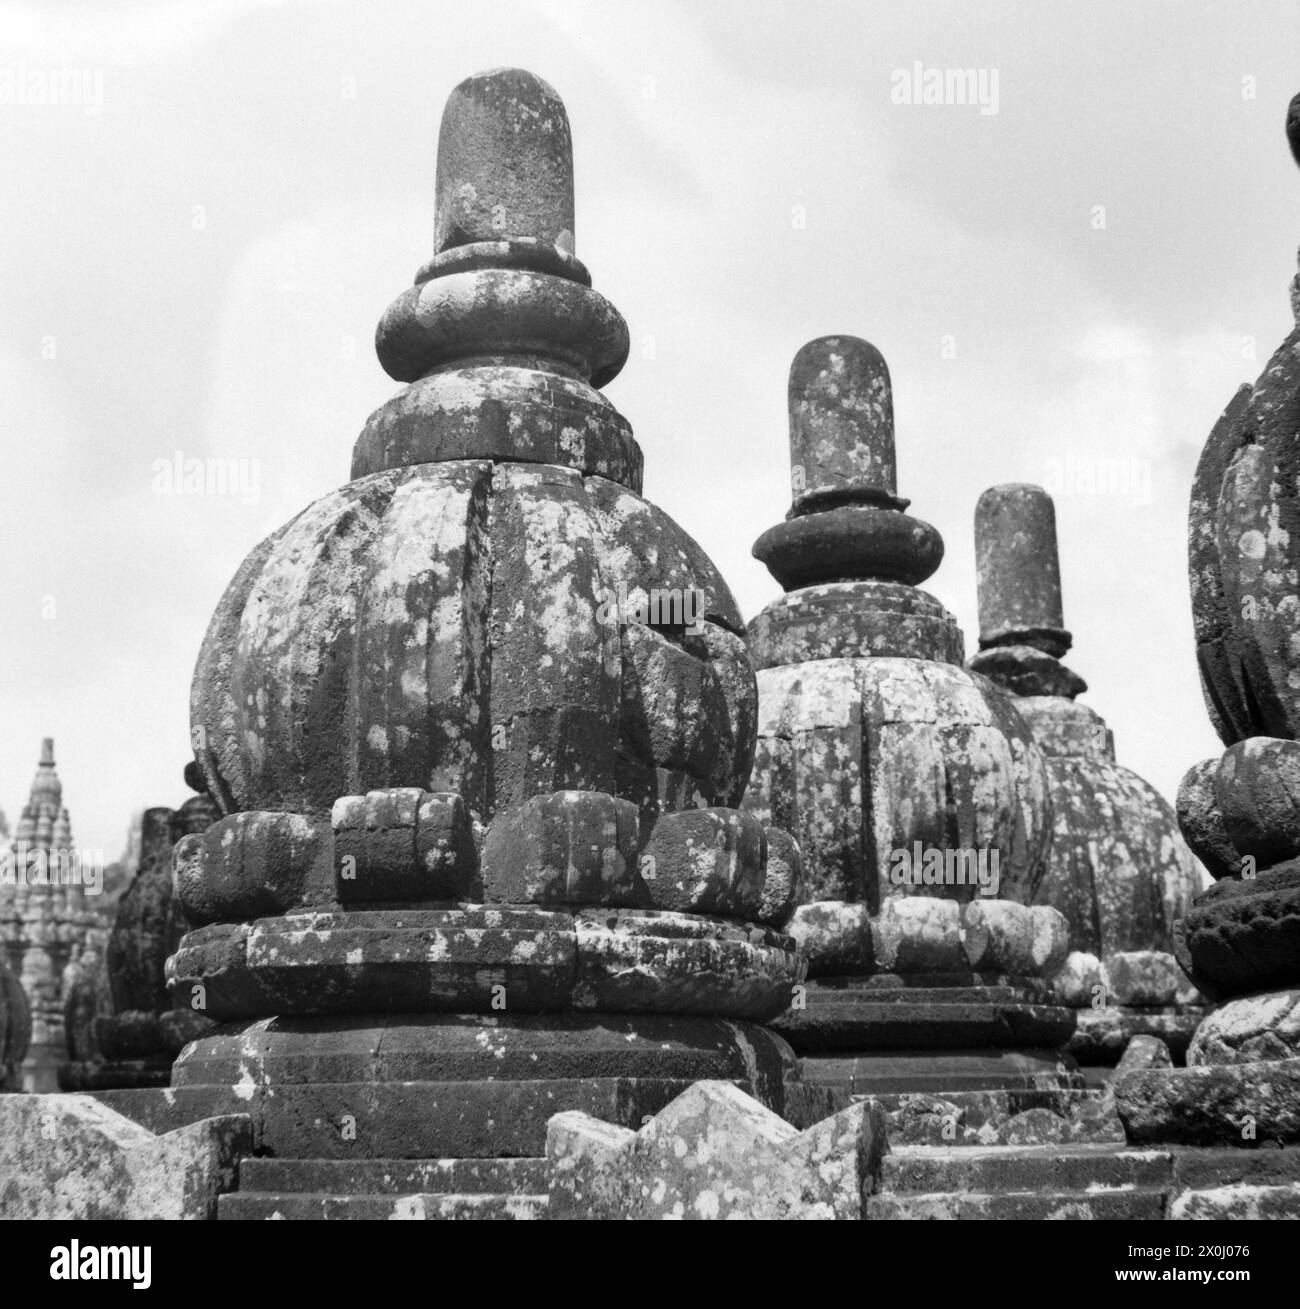 Stupas des Borobudur Tempels, in der Nähe von Yogyakarta in Indonesien. Die stark verwitterte Fassade des Gebäudes ist reich mit Relieffiguren und allerlei Verzierungen verziert. [Automatisierte Übersetzung] Stockfoto